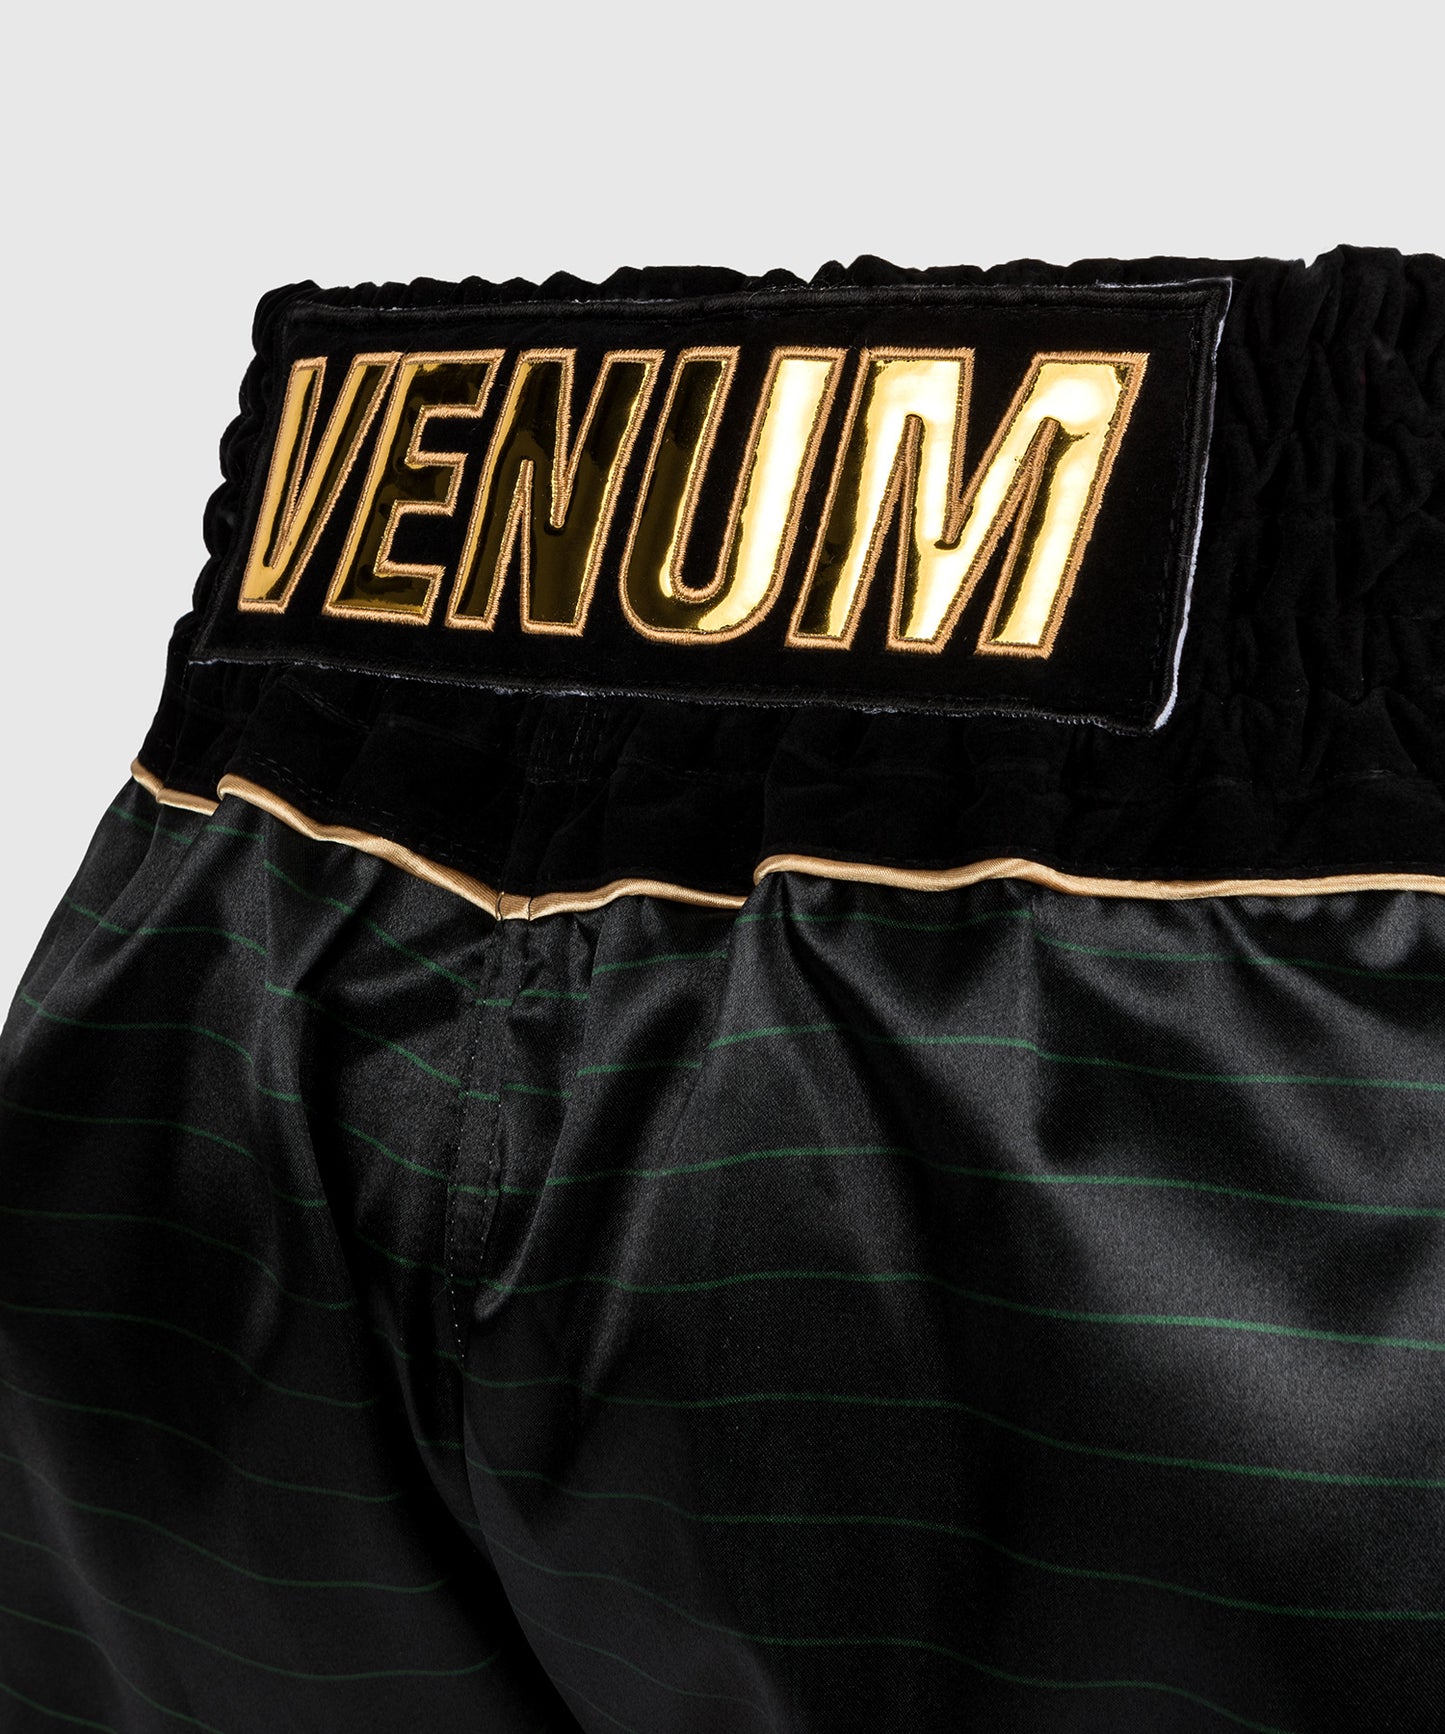 Venum Attack Muay Thai Shorts - Schwarz/Grün